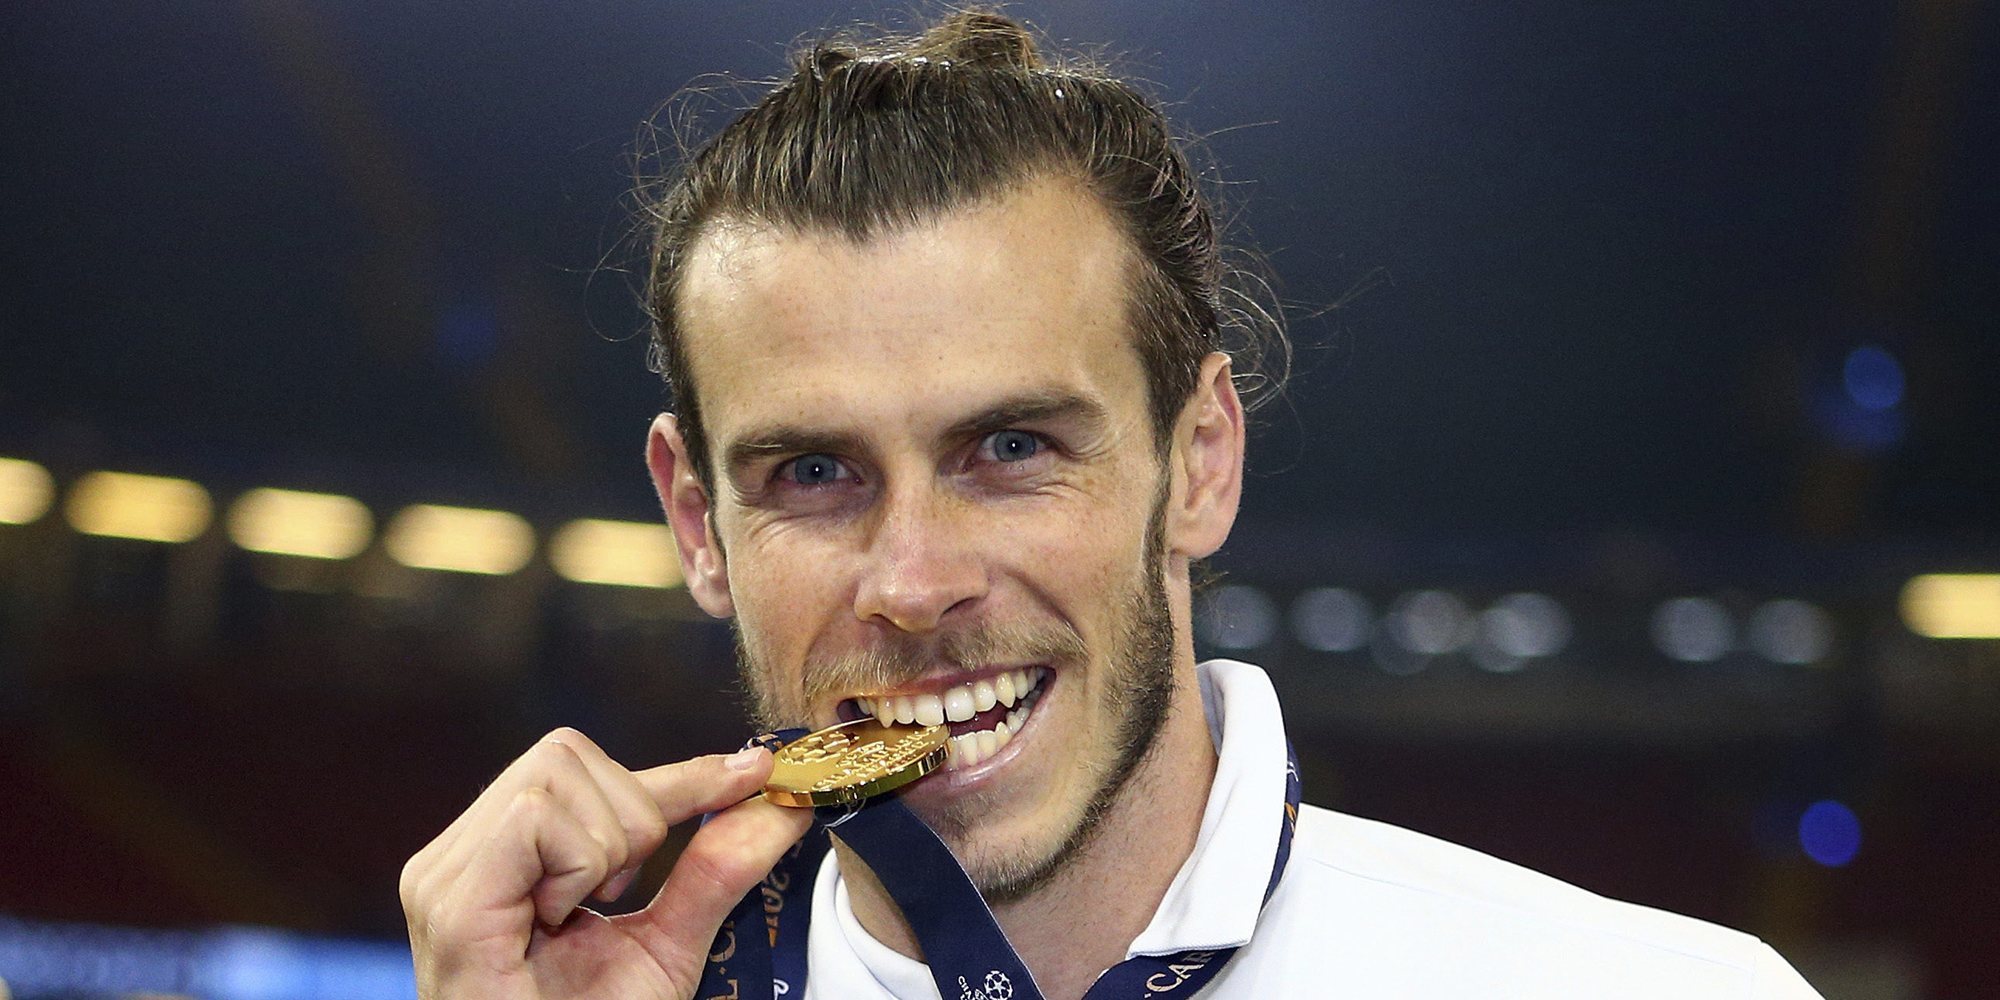 Todo lo que tienes que saber de Gareth Bale en 30 curiosidades